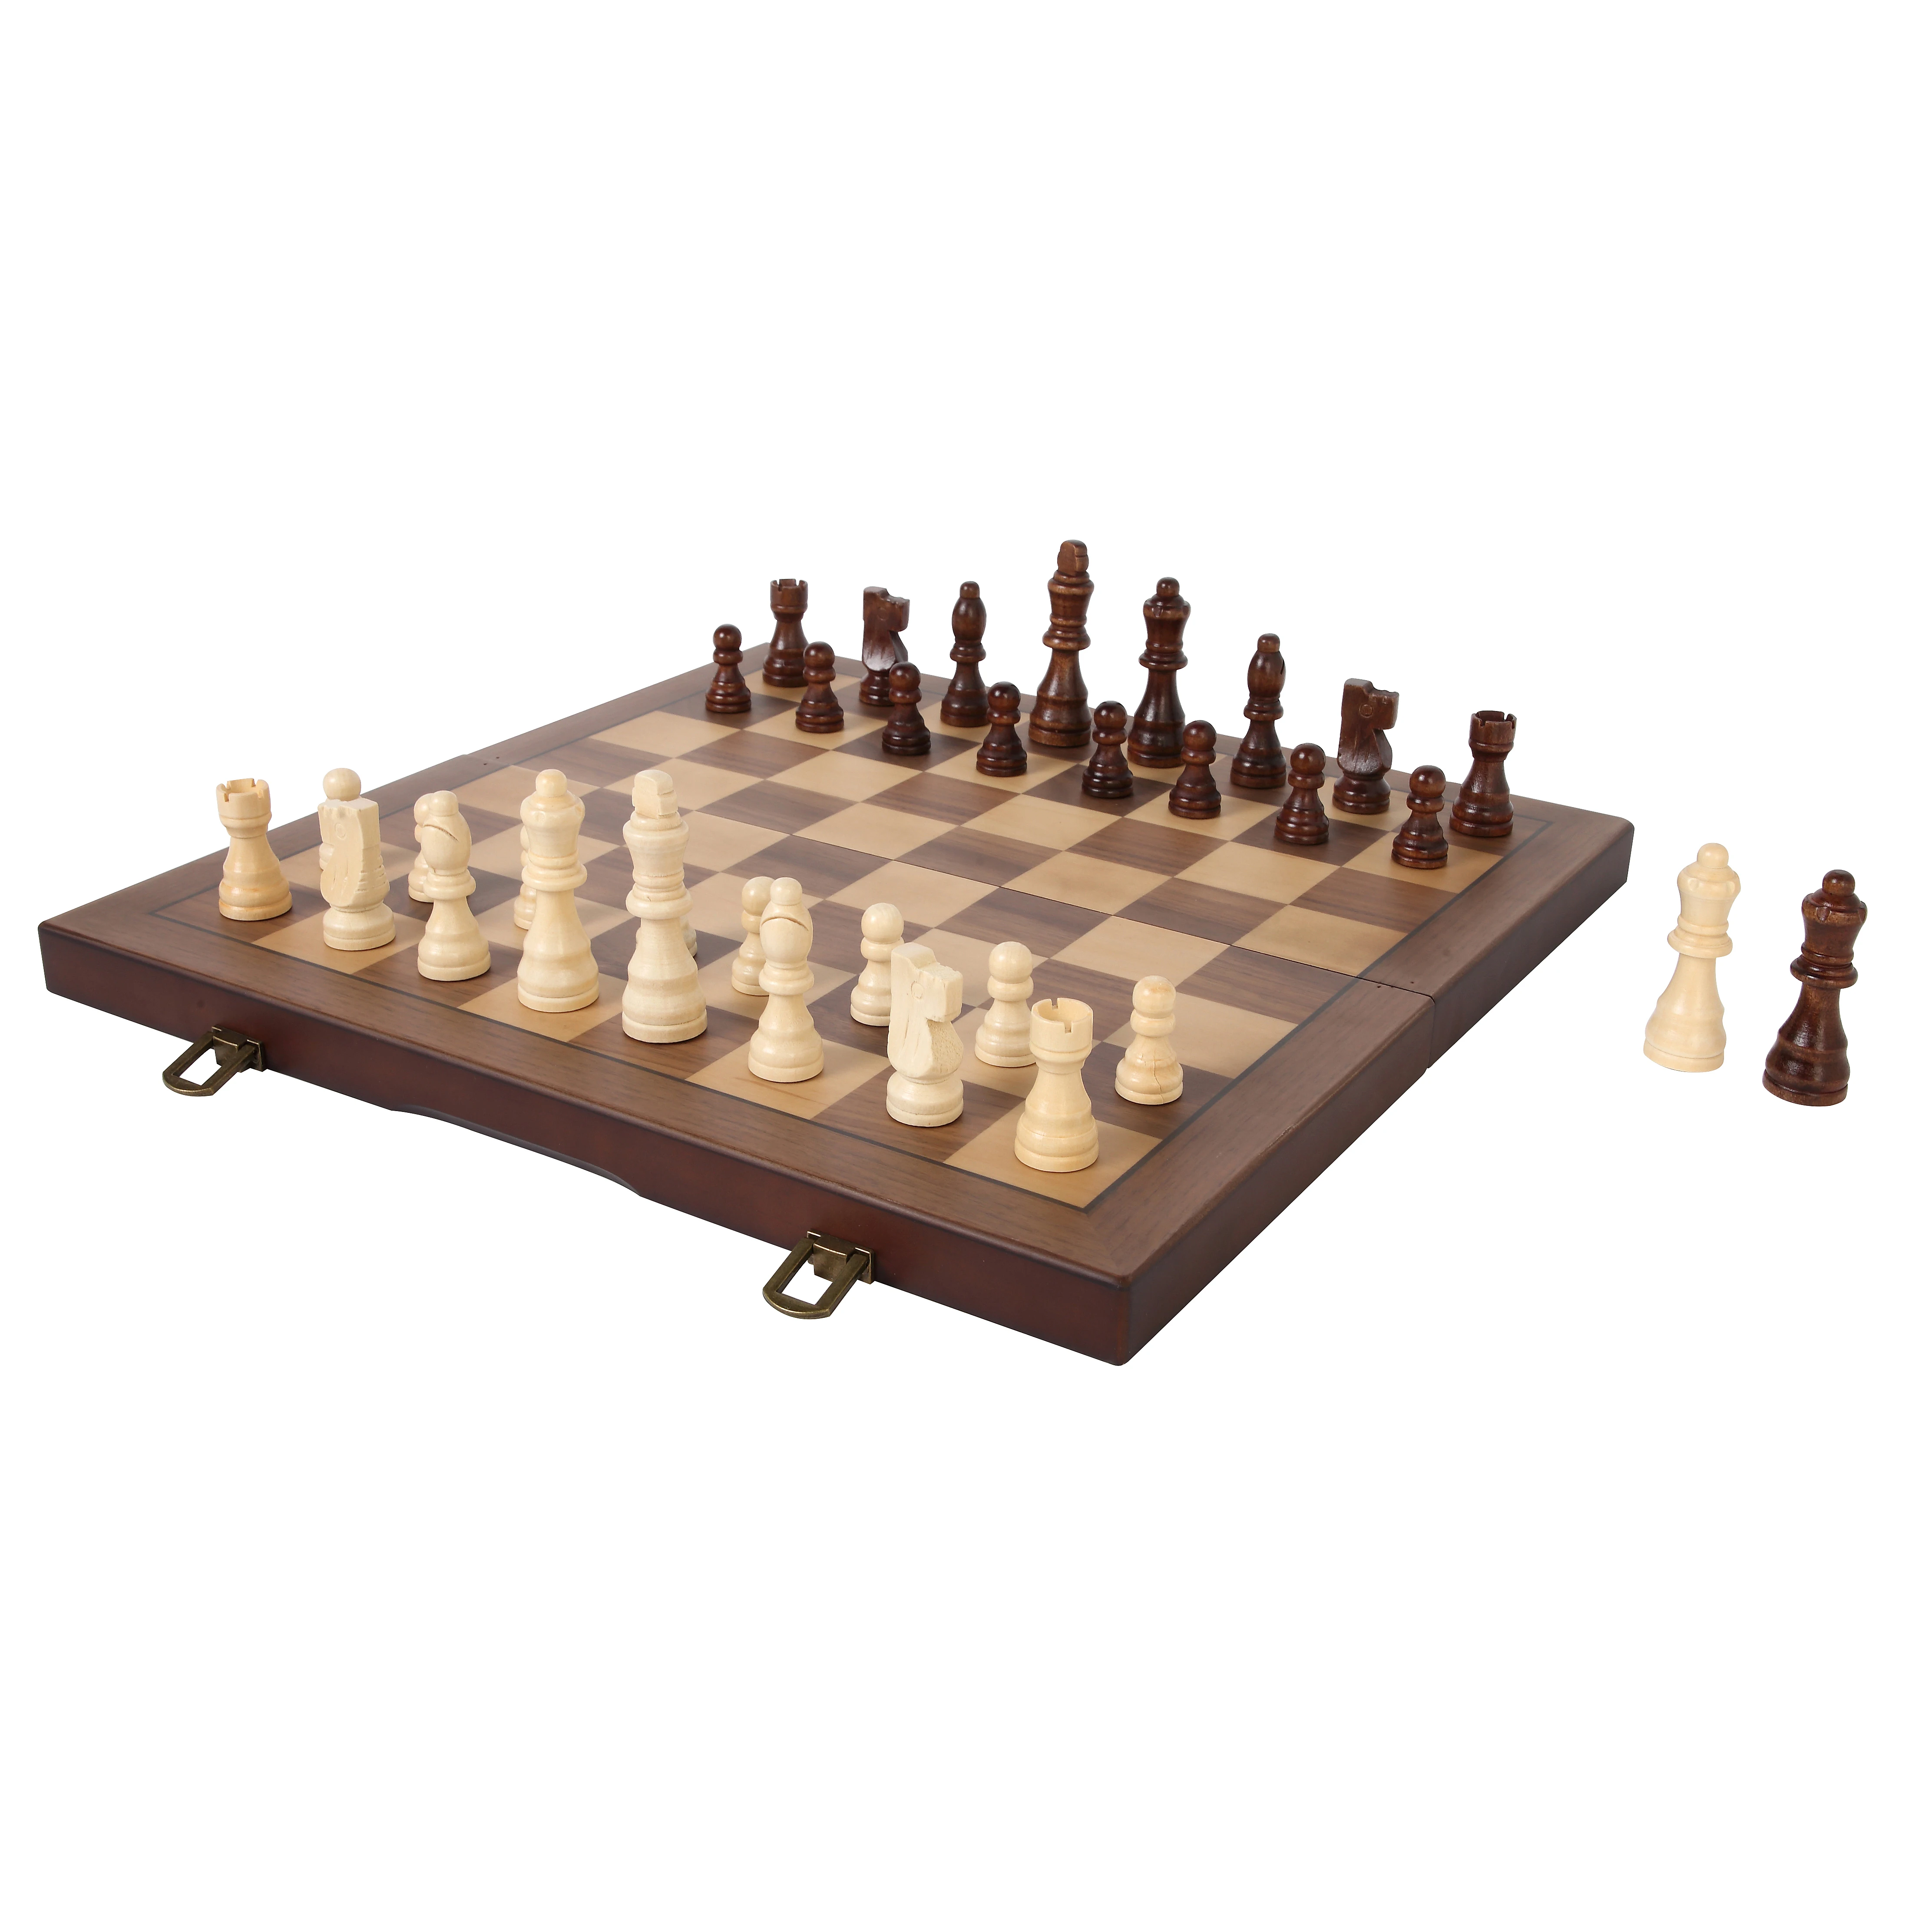 Juego de ajedrez clásico de madera_15 x 15 pulgadas 